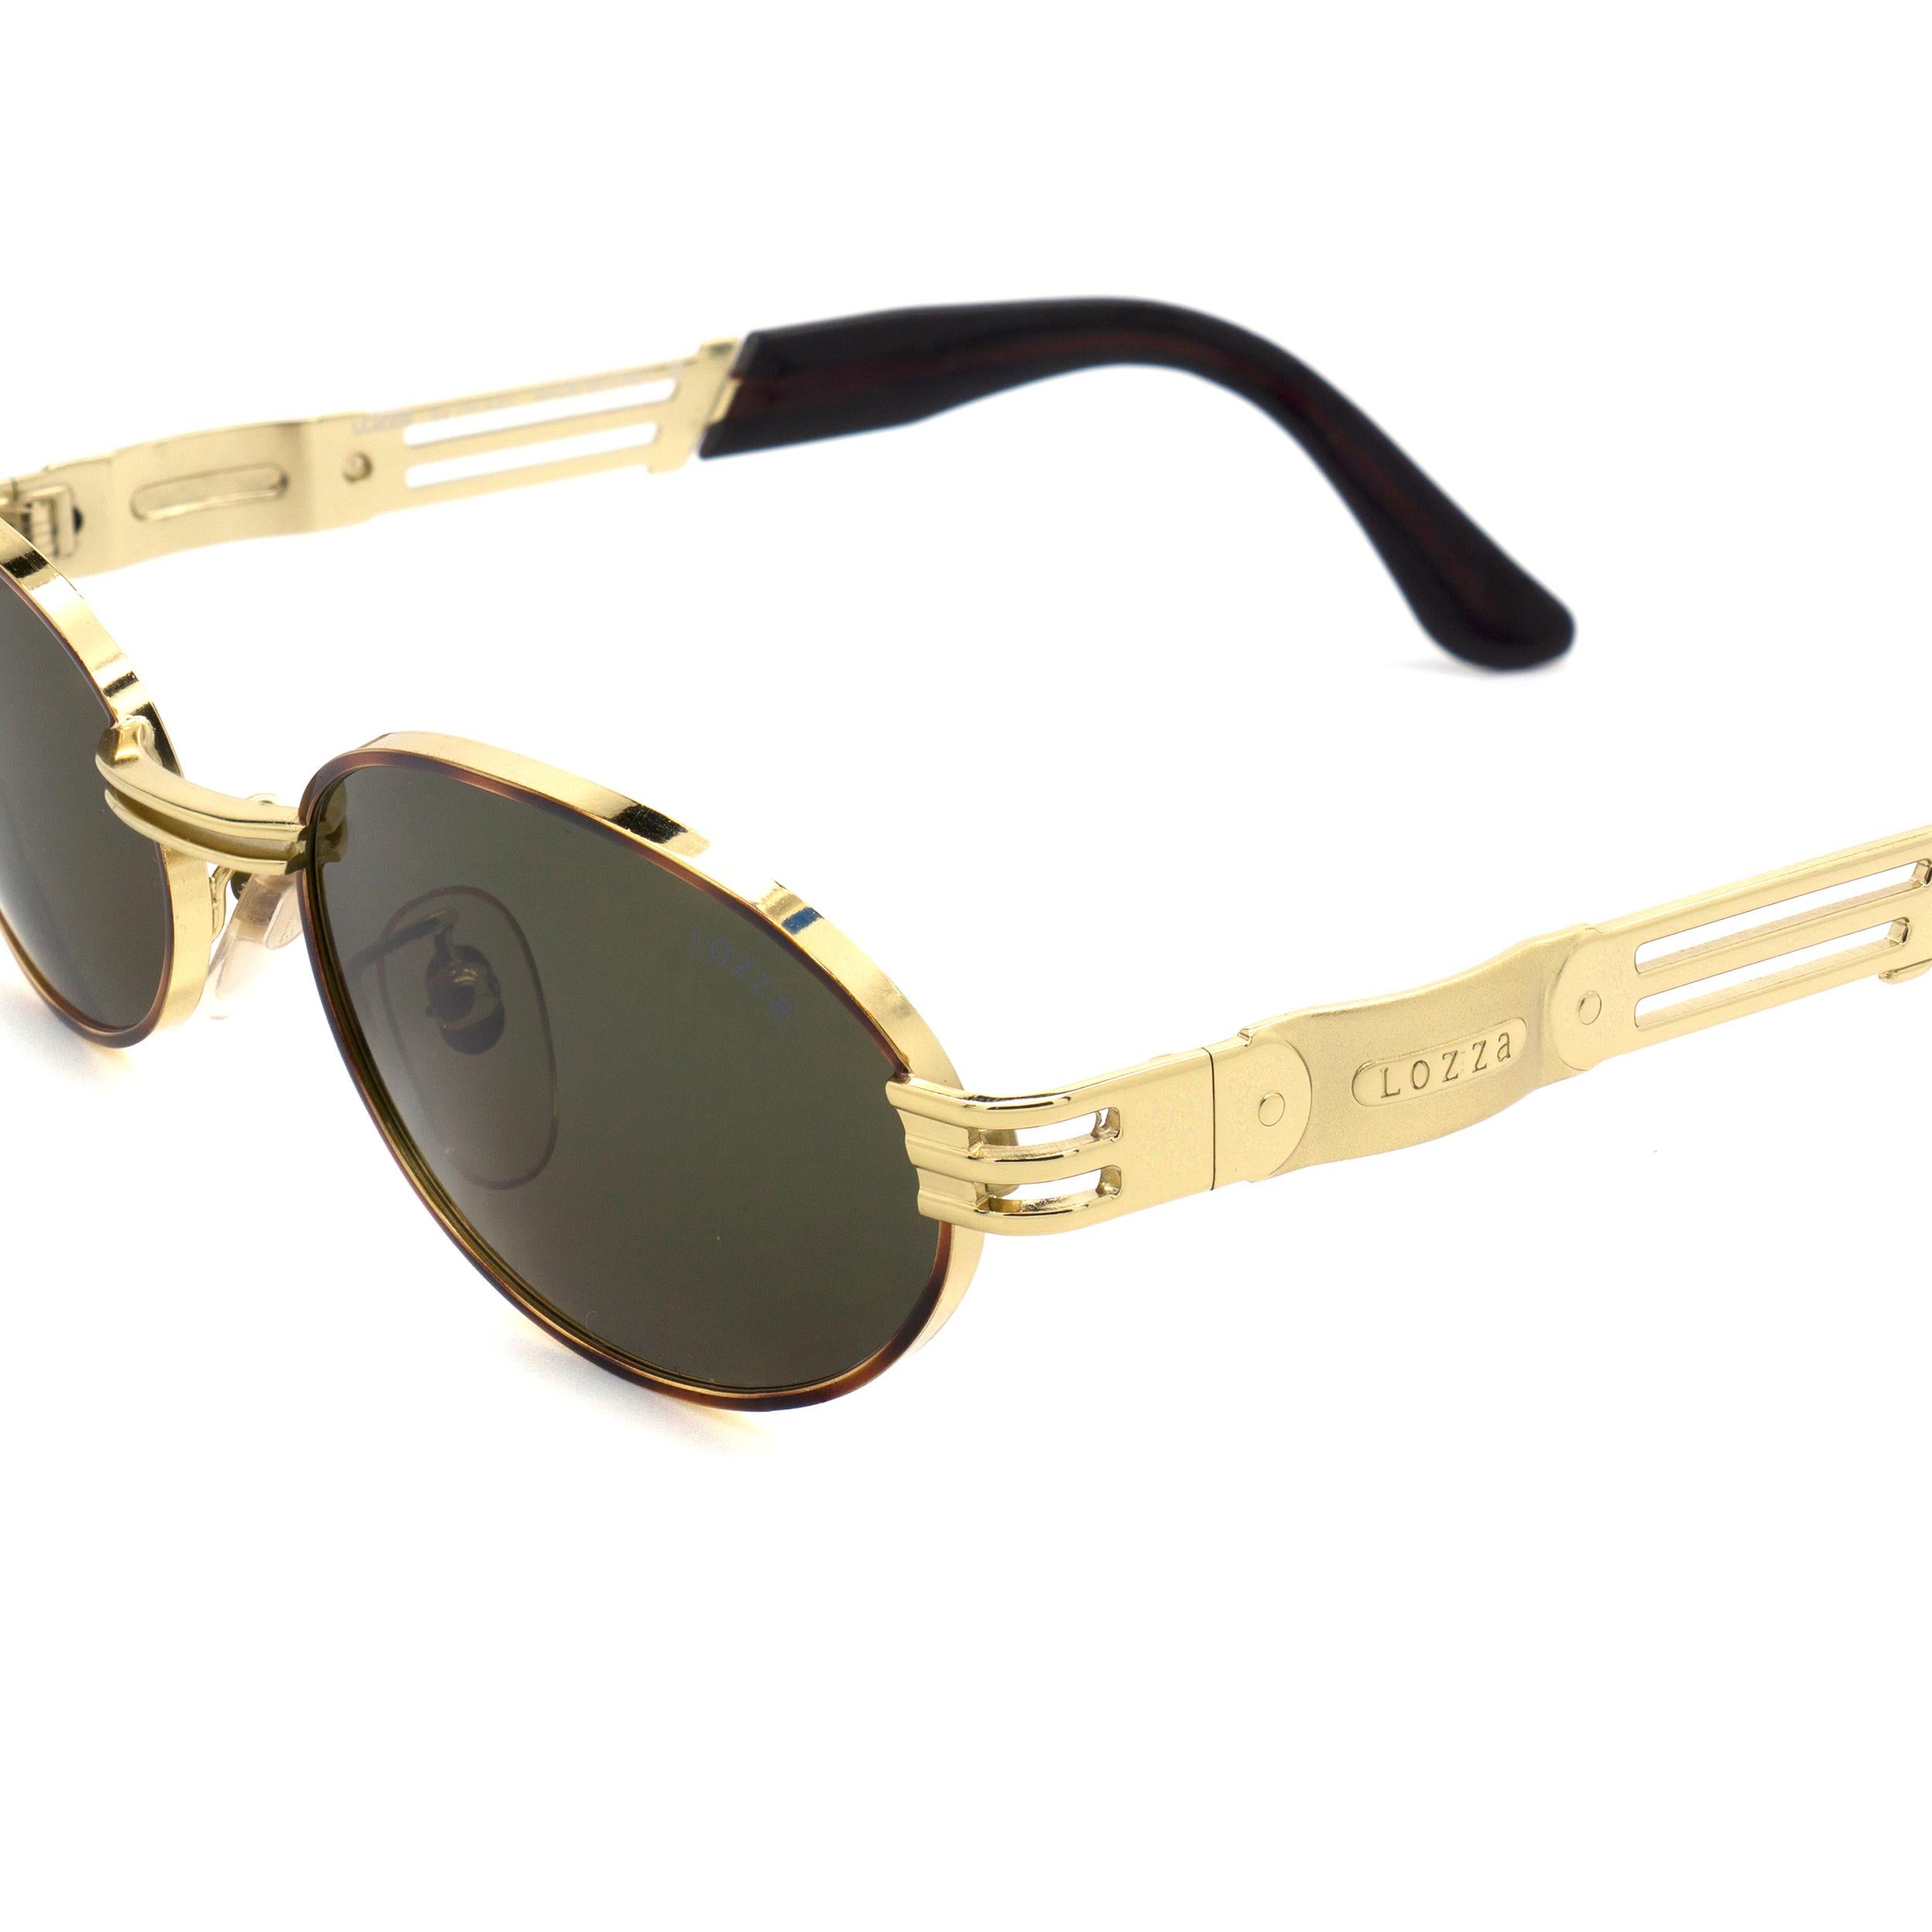 Lozza golden oval vintage sunglasses 80s In New Condition For Sale In Santa Clarita, CA